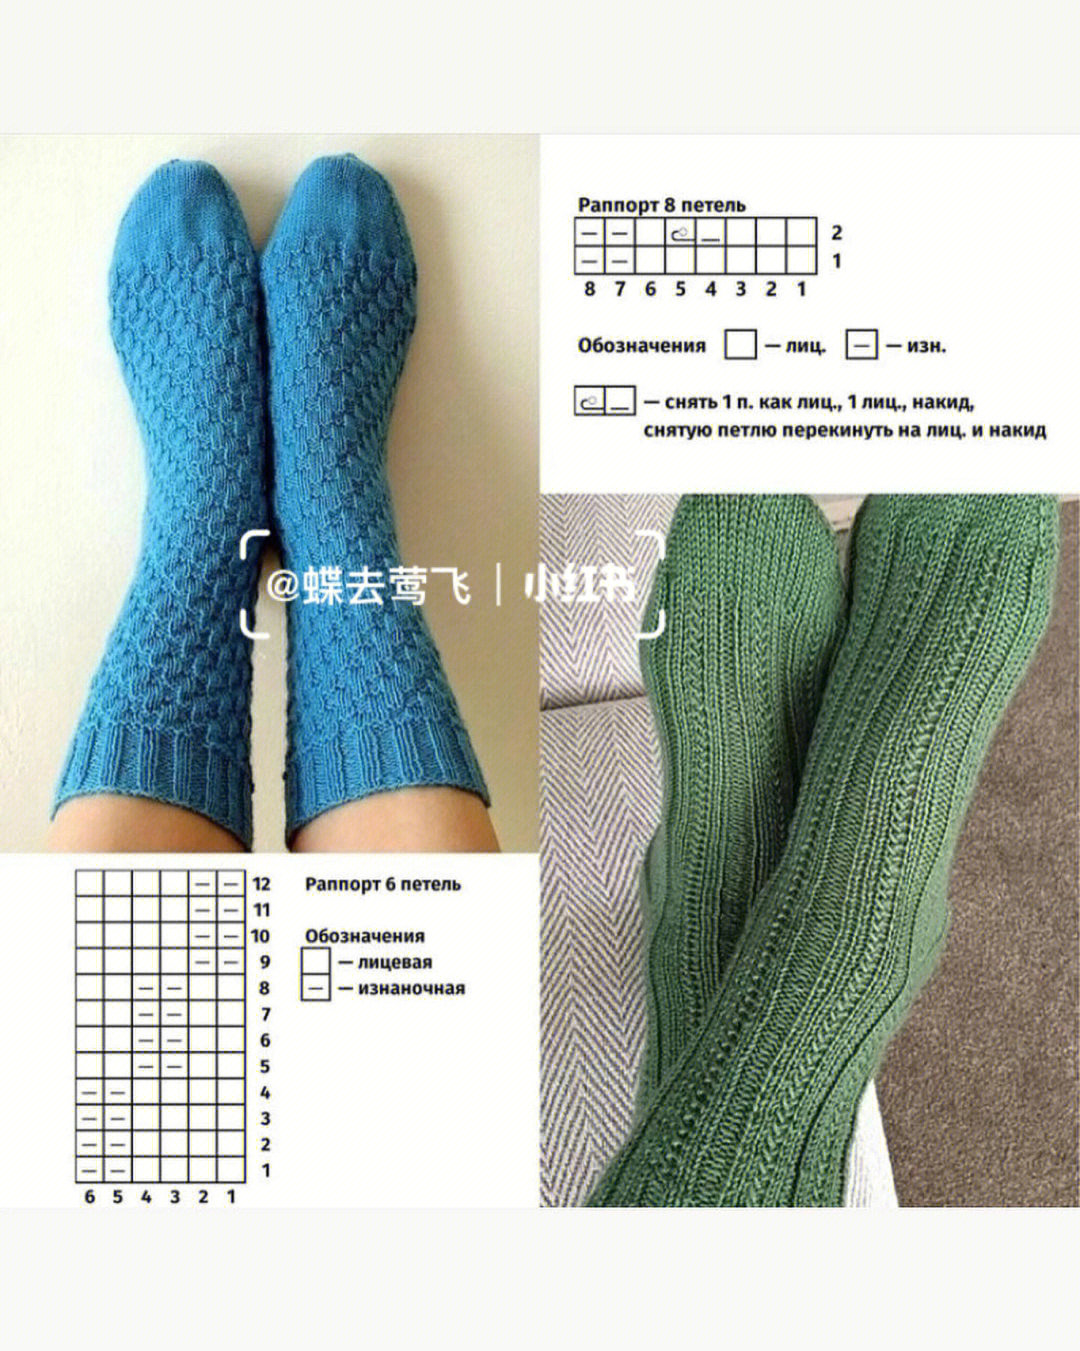 毛线袜子五种打法图片